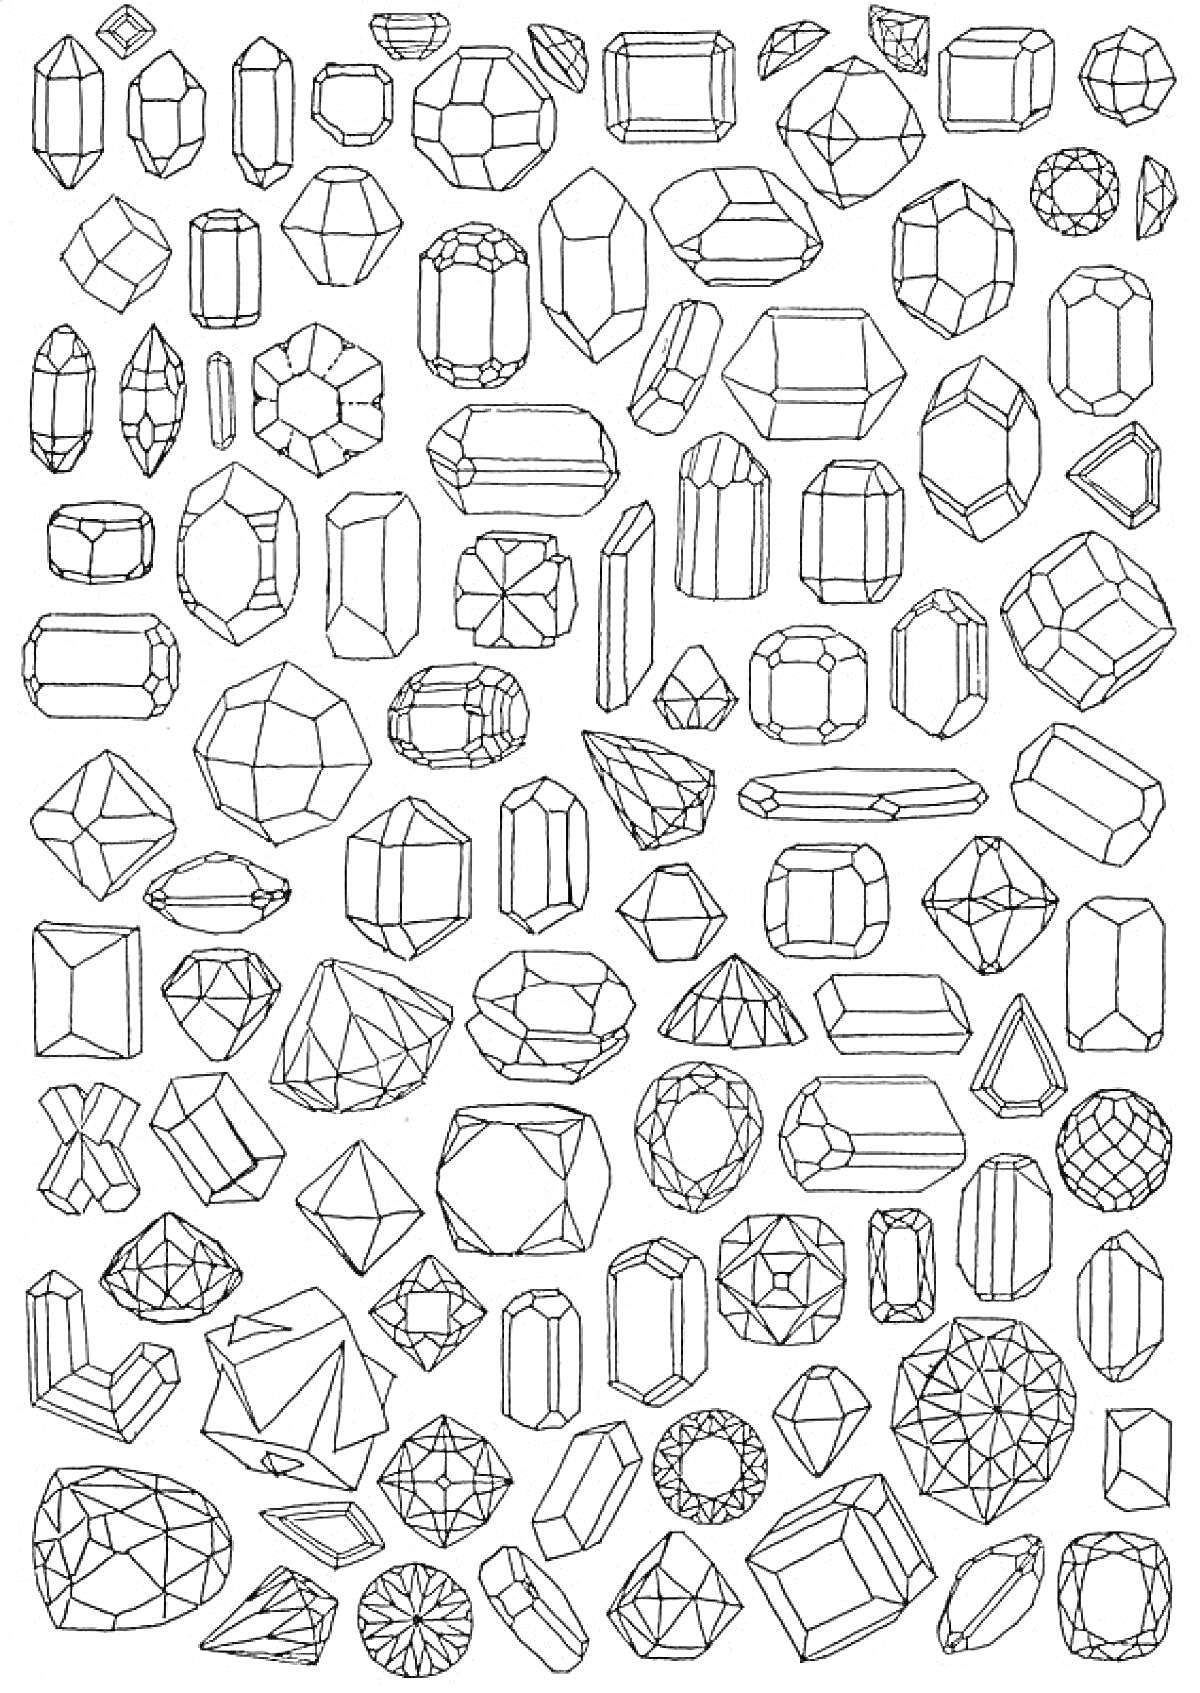 Драгоценные камни, состоящие из различных форм и огранок, включая бриллиант, изумруд, овал, багет, круг, сердце, груша, триллиант и маркиз.